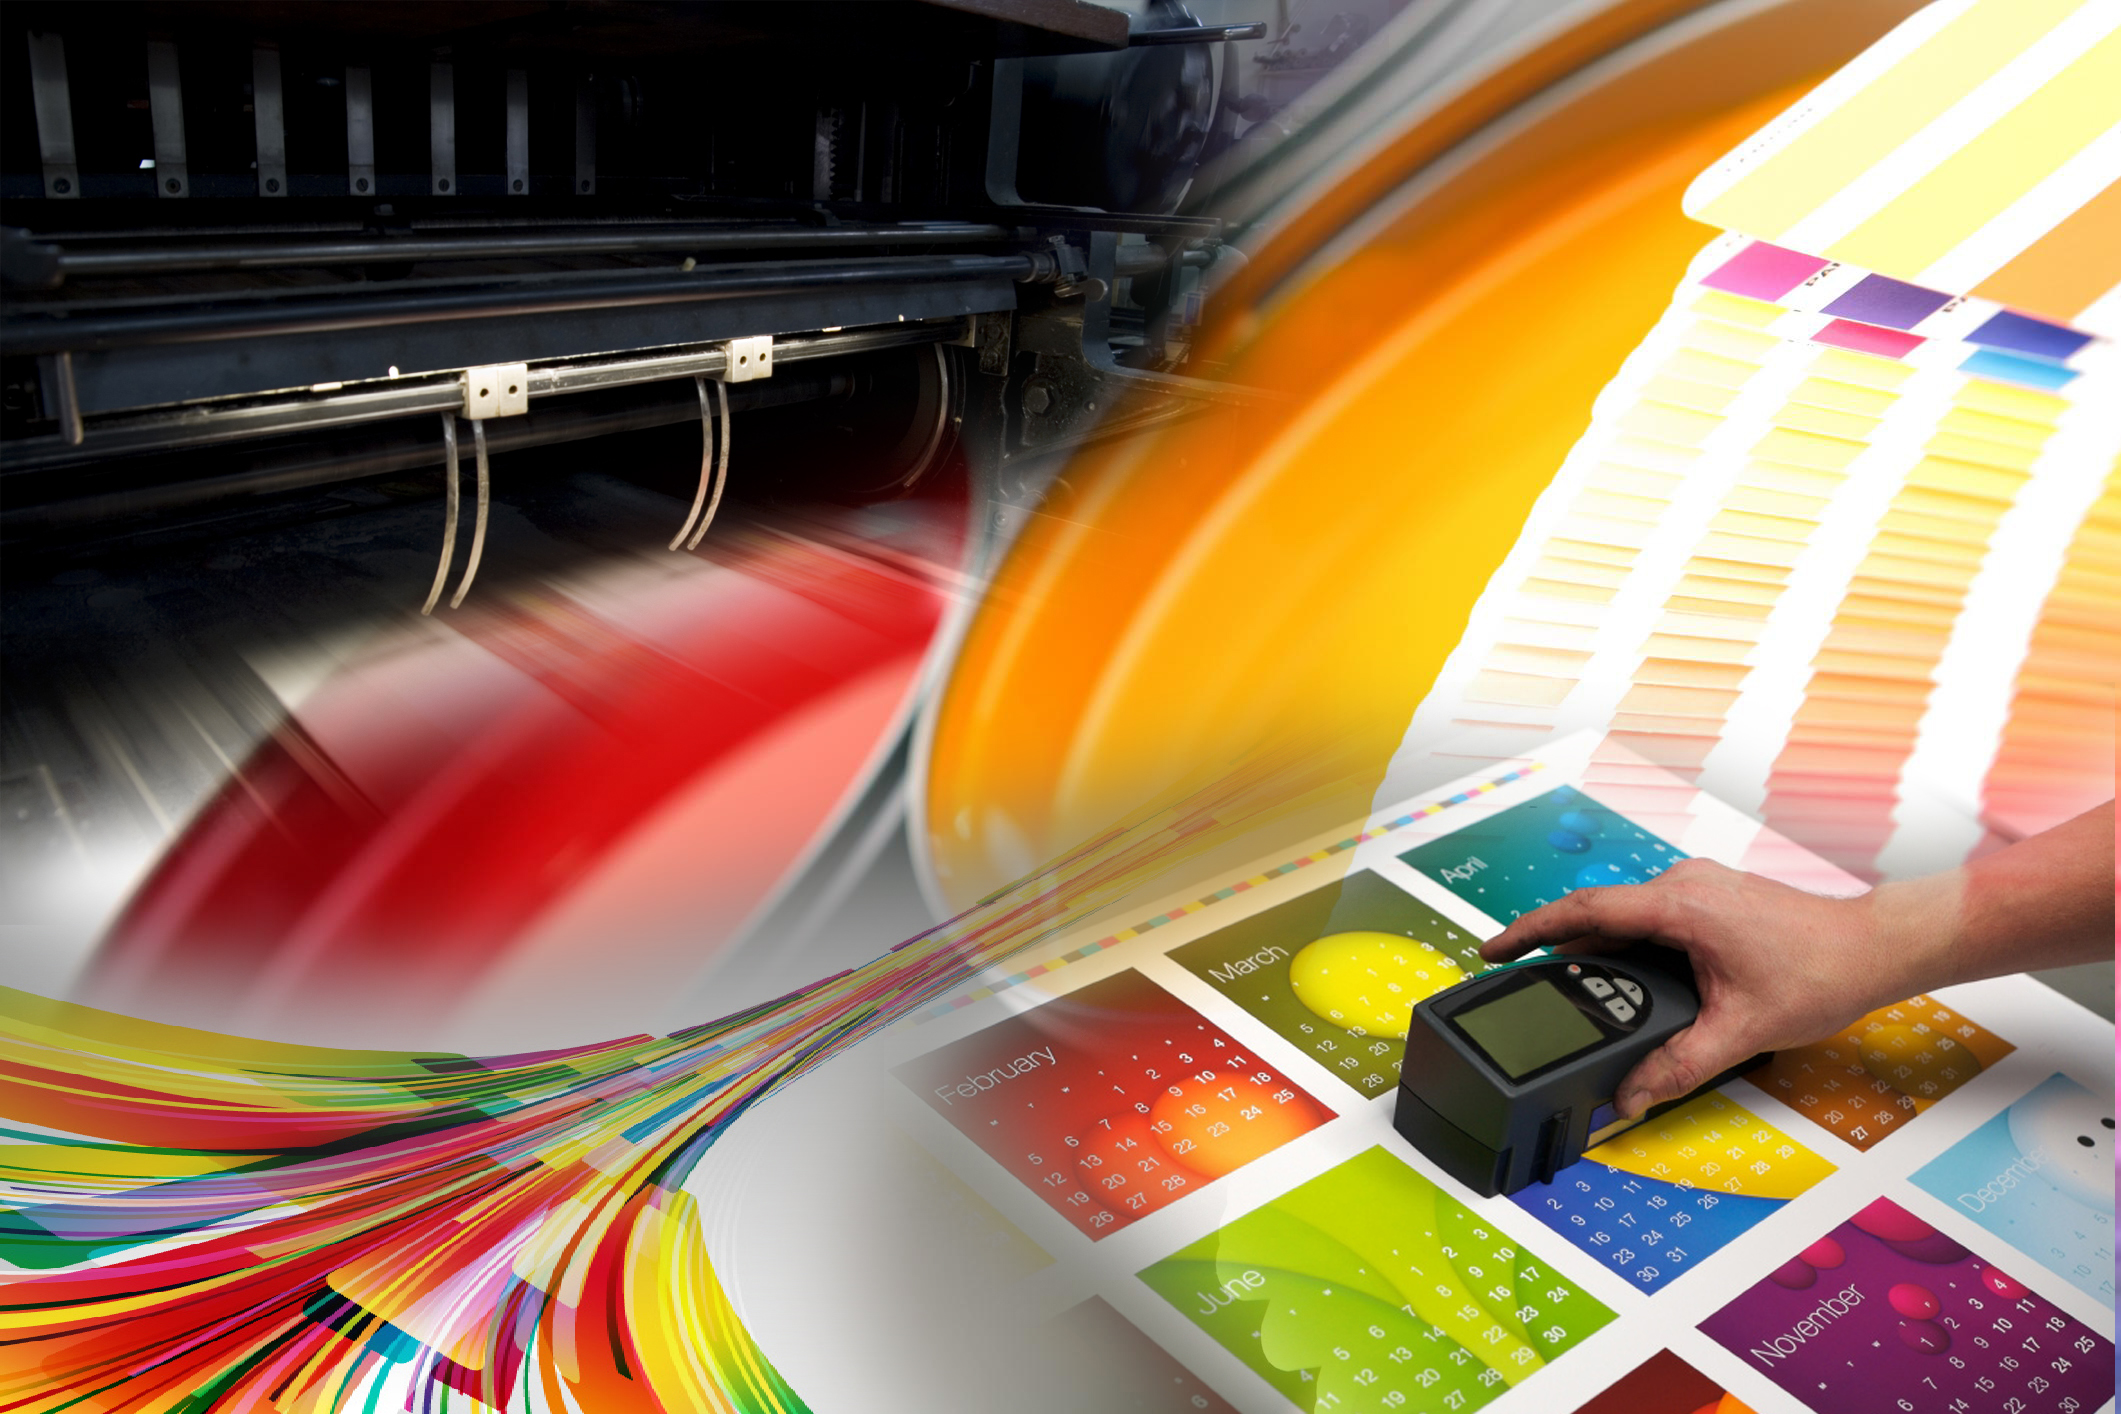 Graphic products. Цифровая печать. Типография. Цифровая печать в полиграфии. Цветная печать.